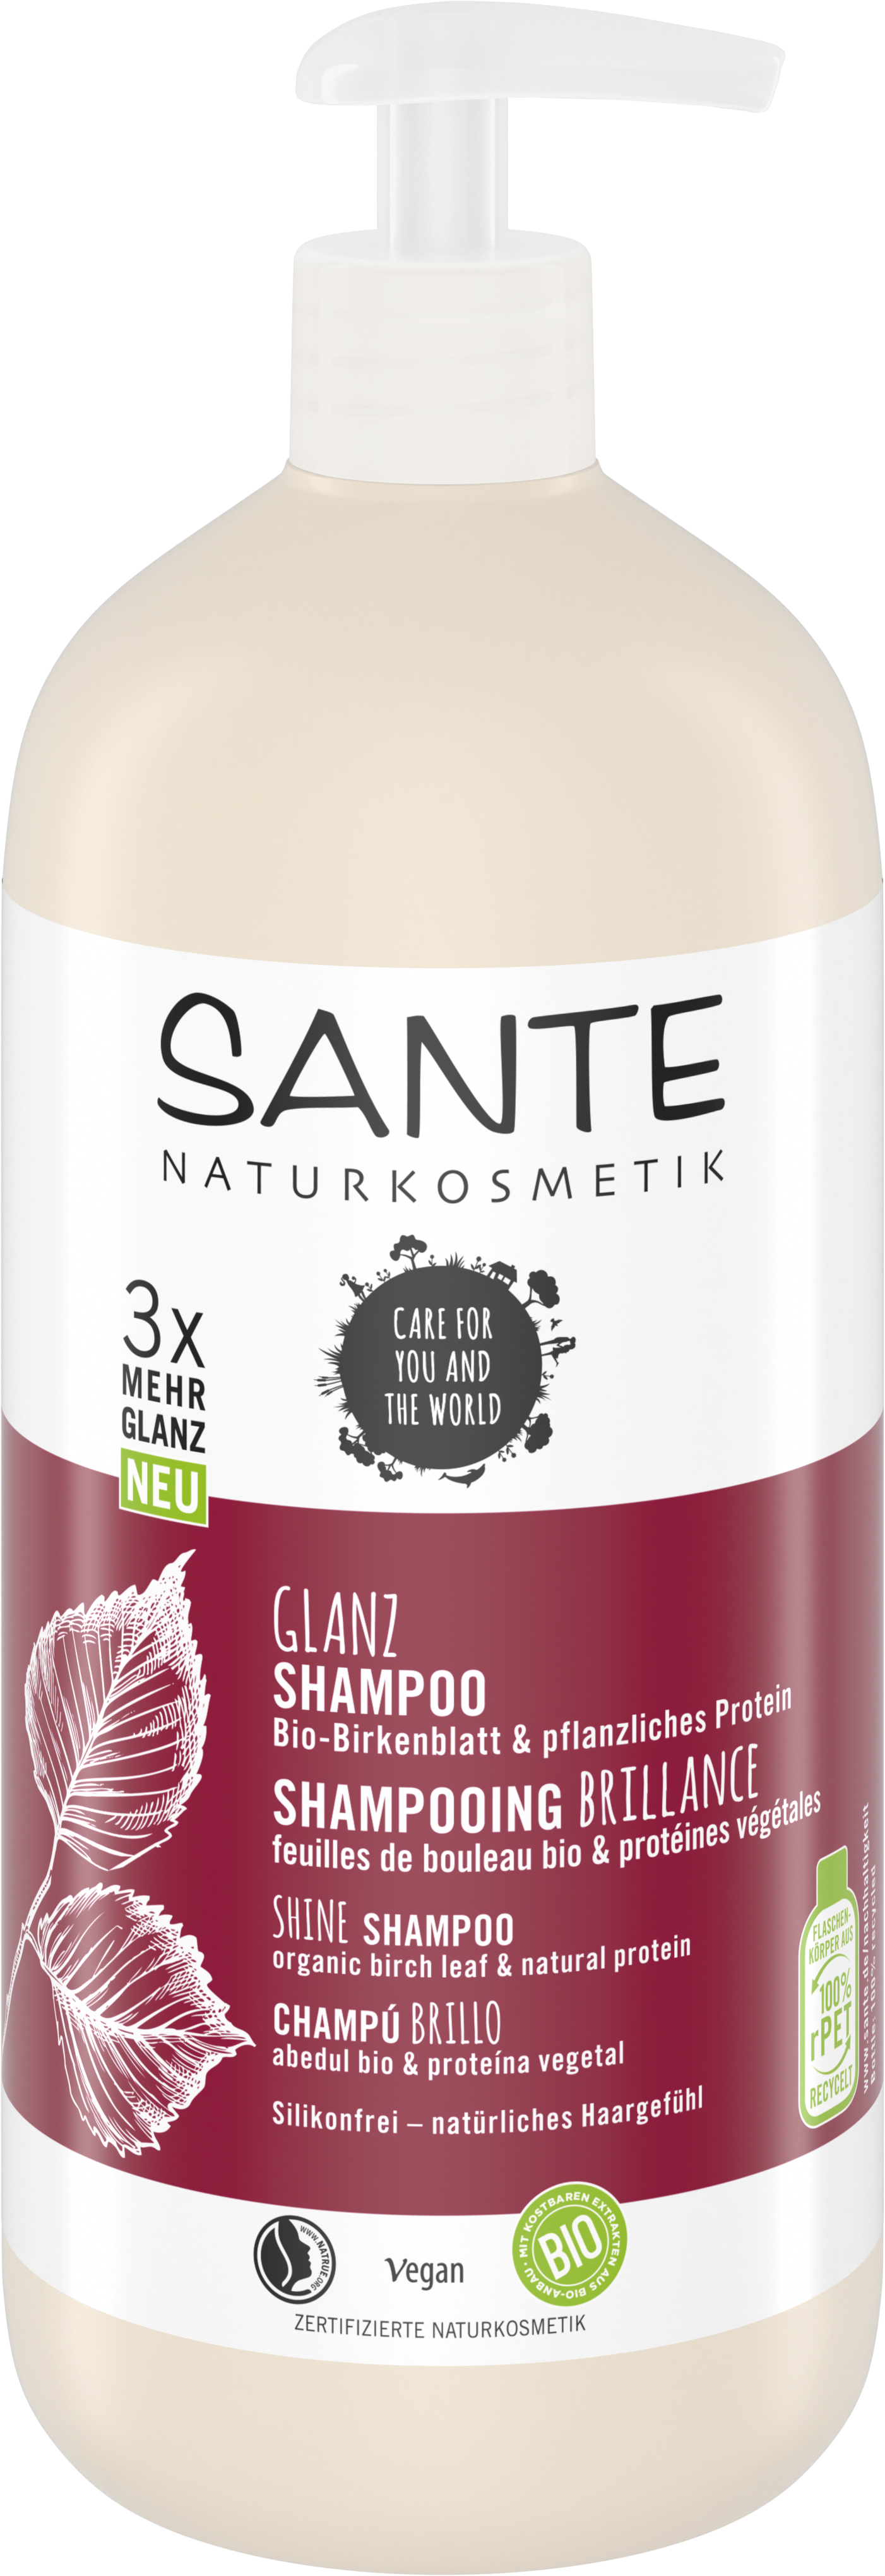 SANTE Naturkosmetik & | Protein Glanz Bio-Birkenblatt pflanzliches Shampoo